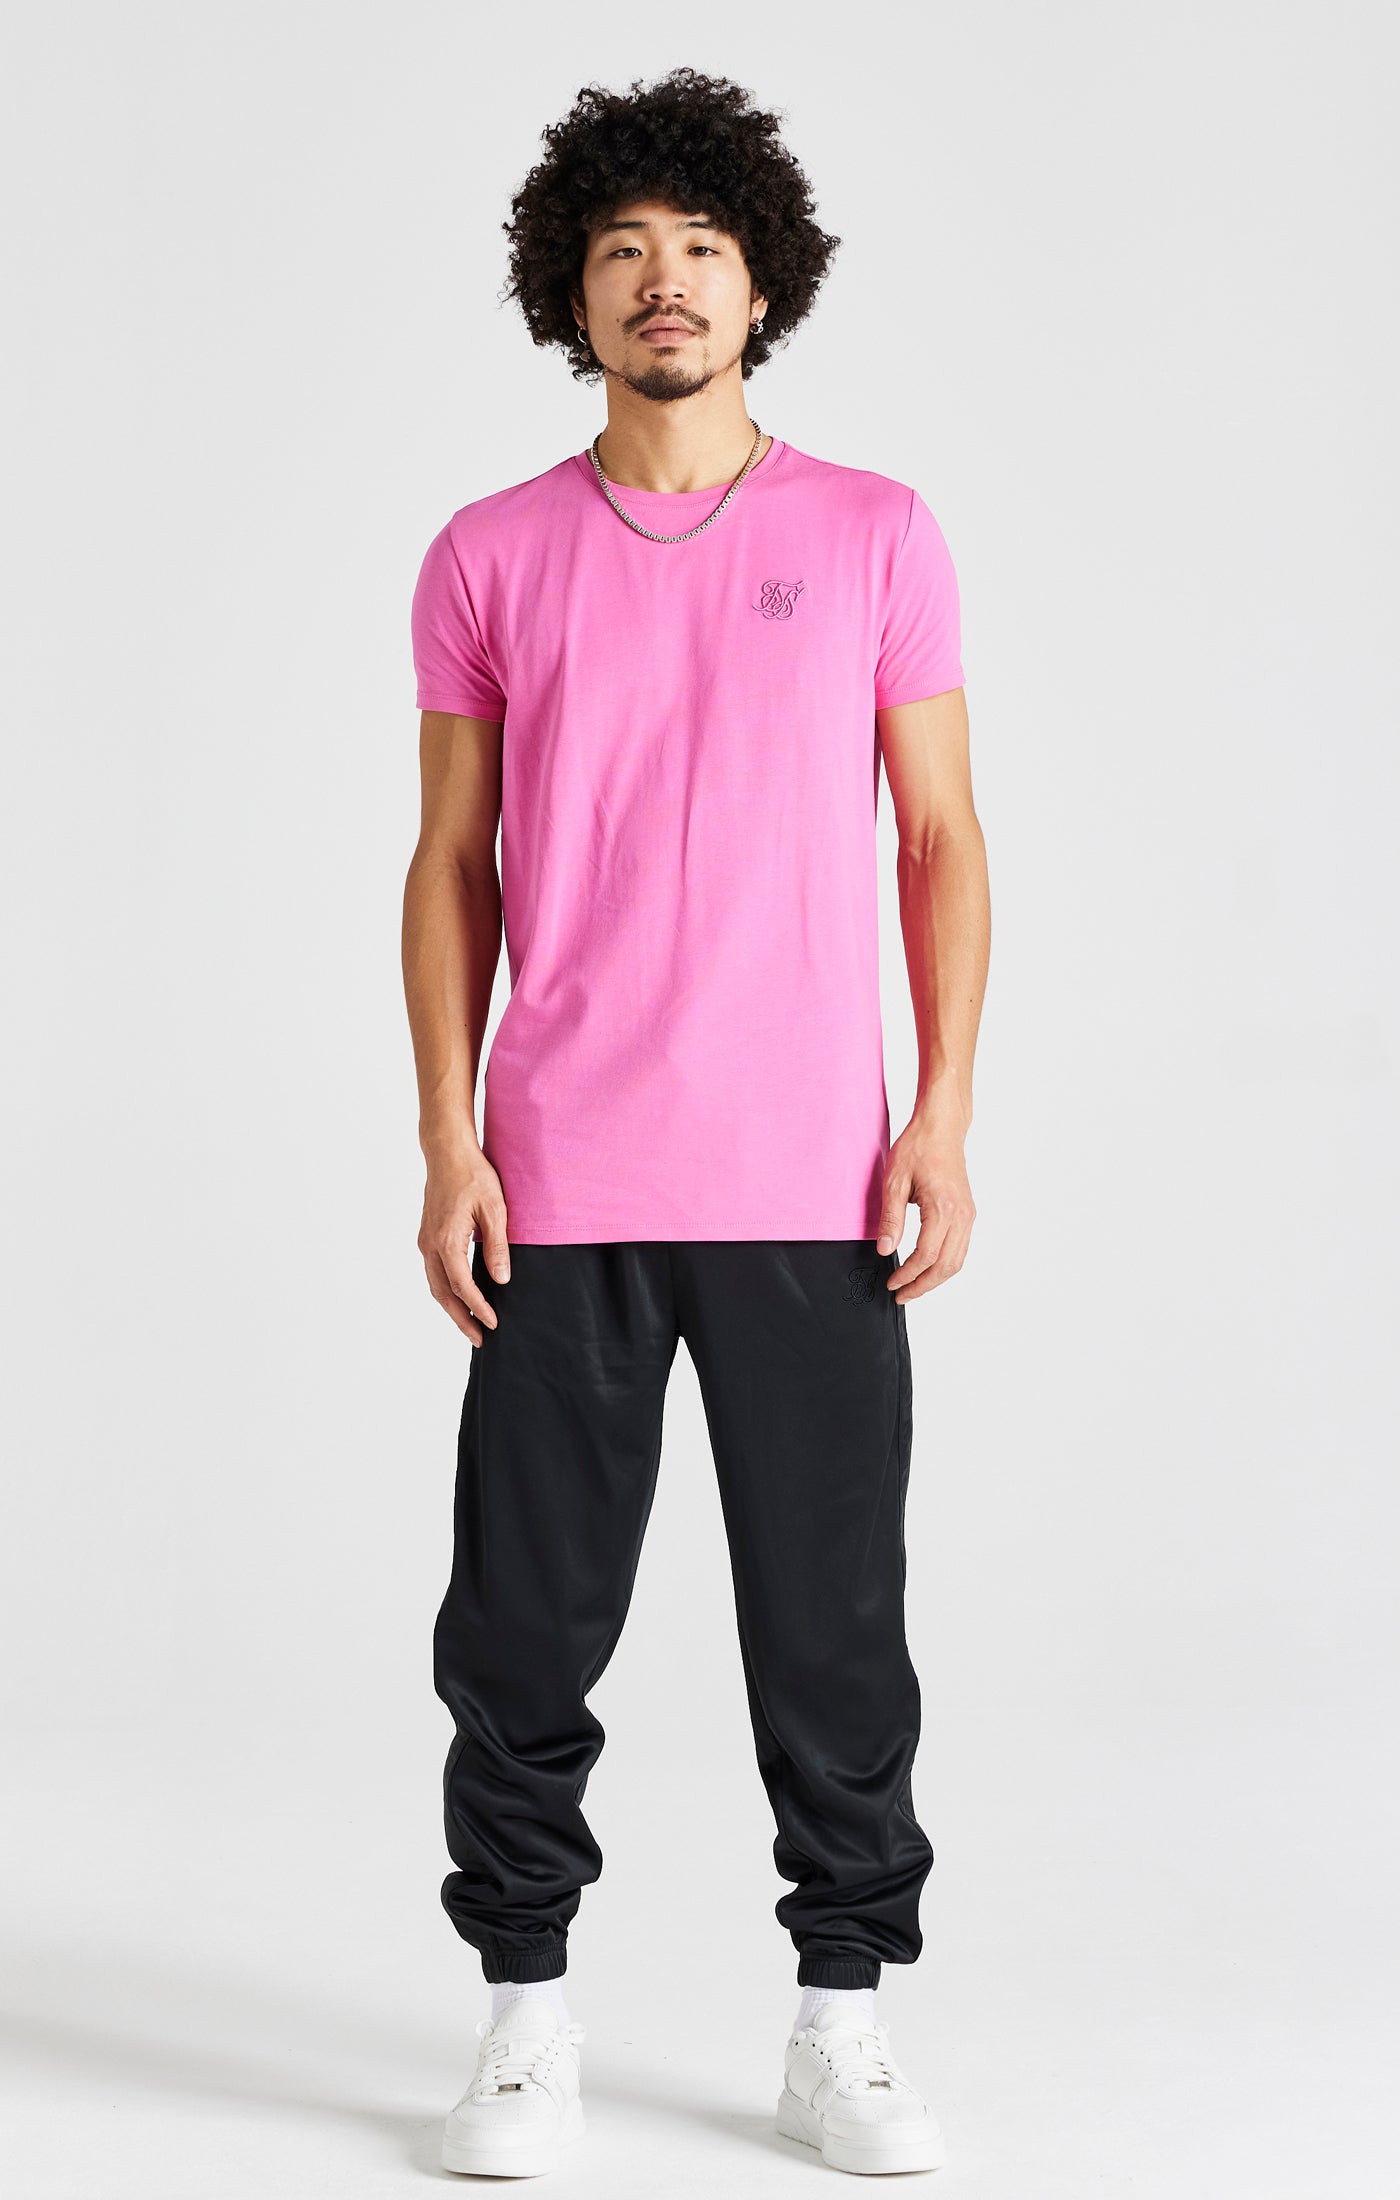 Pinkes Kurzärmliges Muskelfitness T Shirt (2)